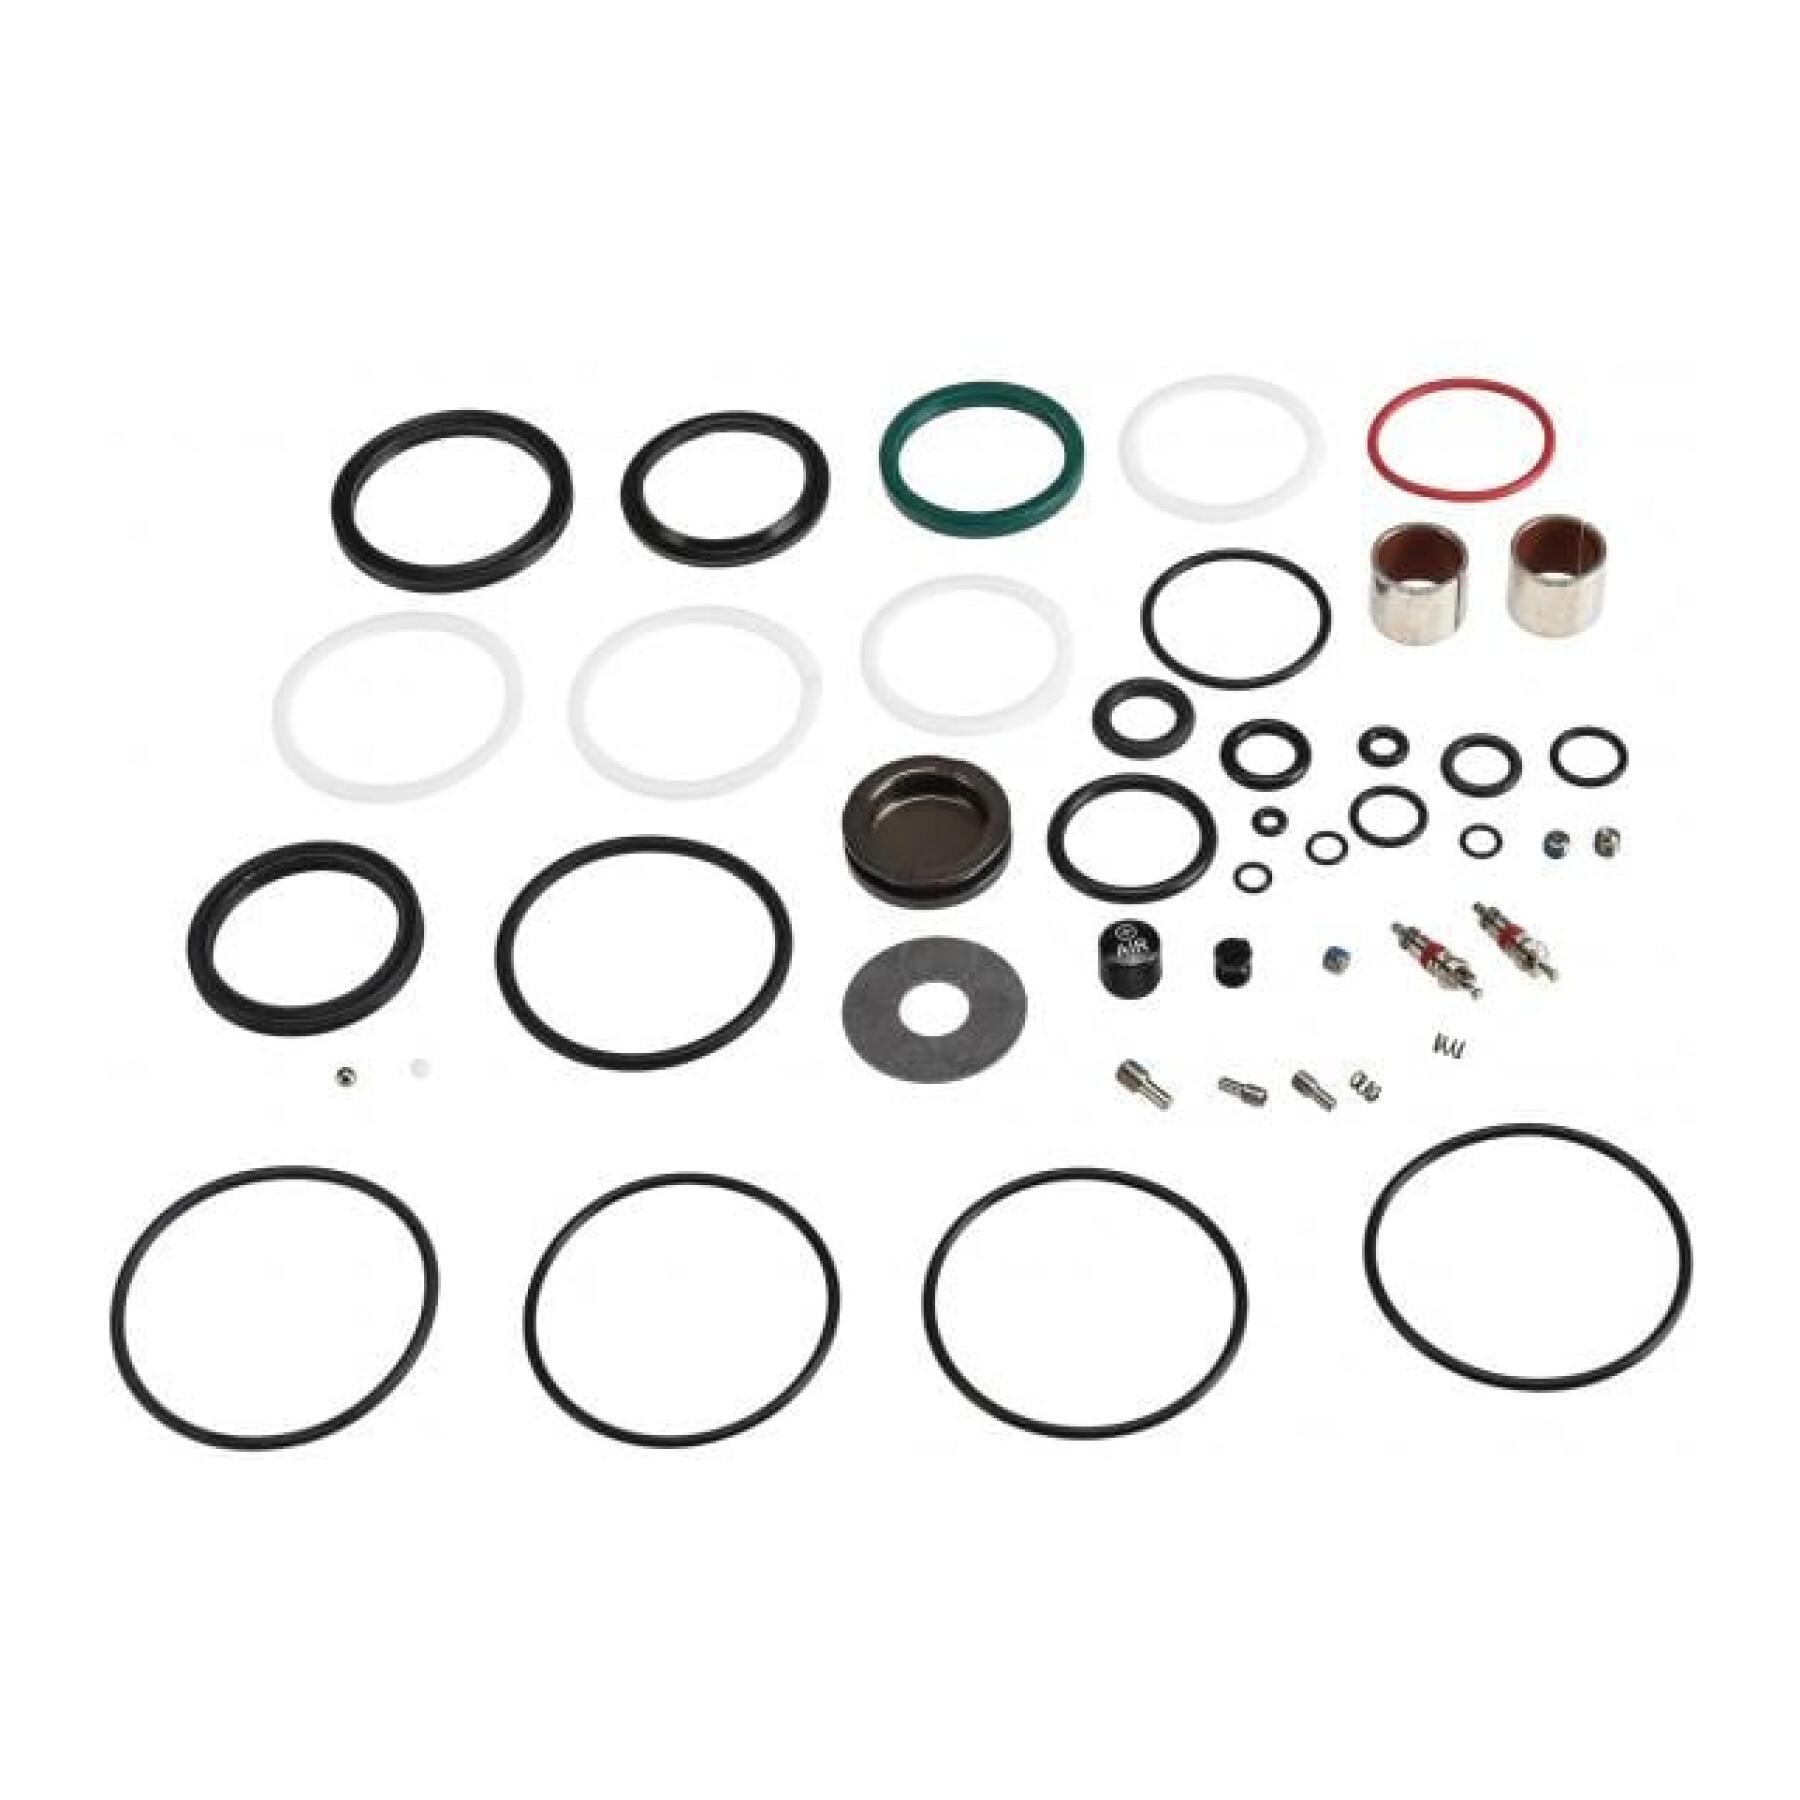 Shock absorber parts kit Rockshox Full Mn Rt3/Rt/Rl/R